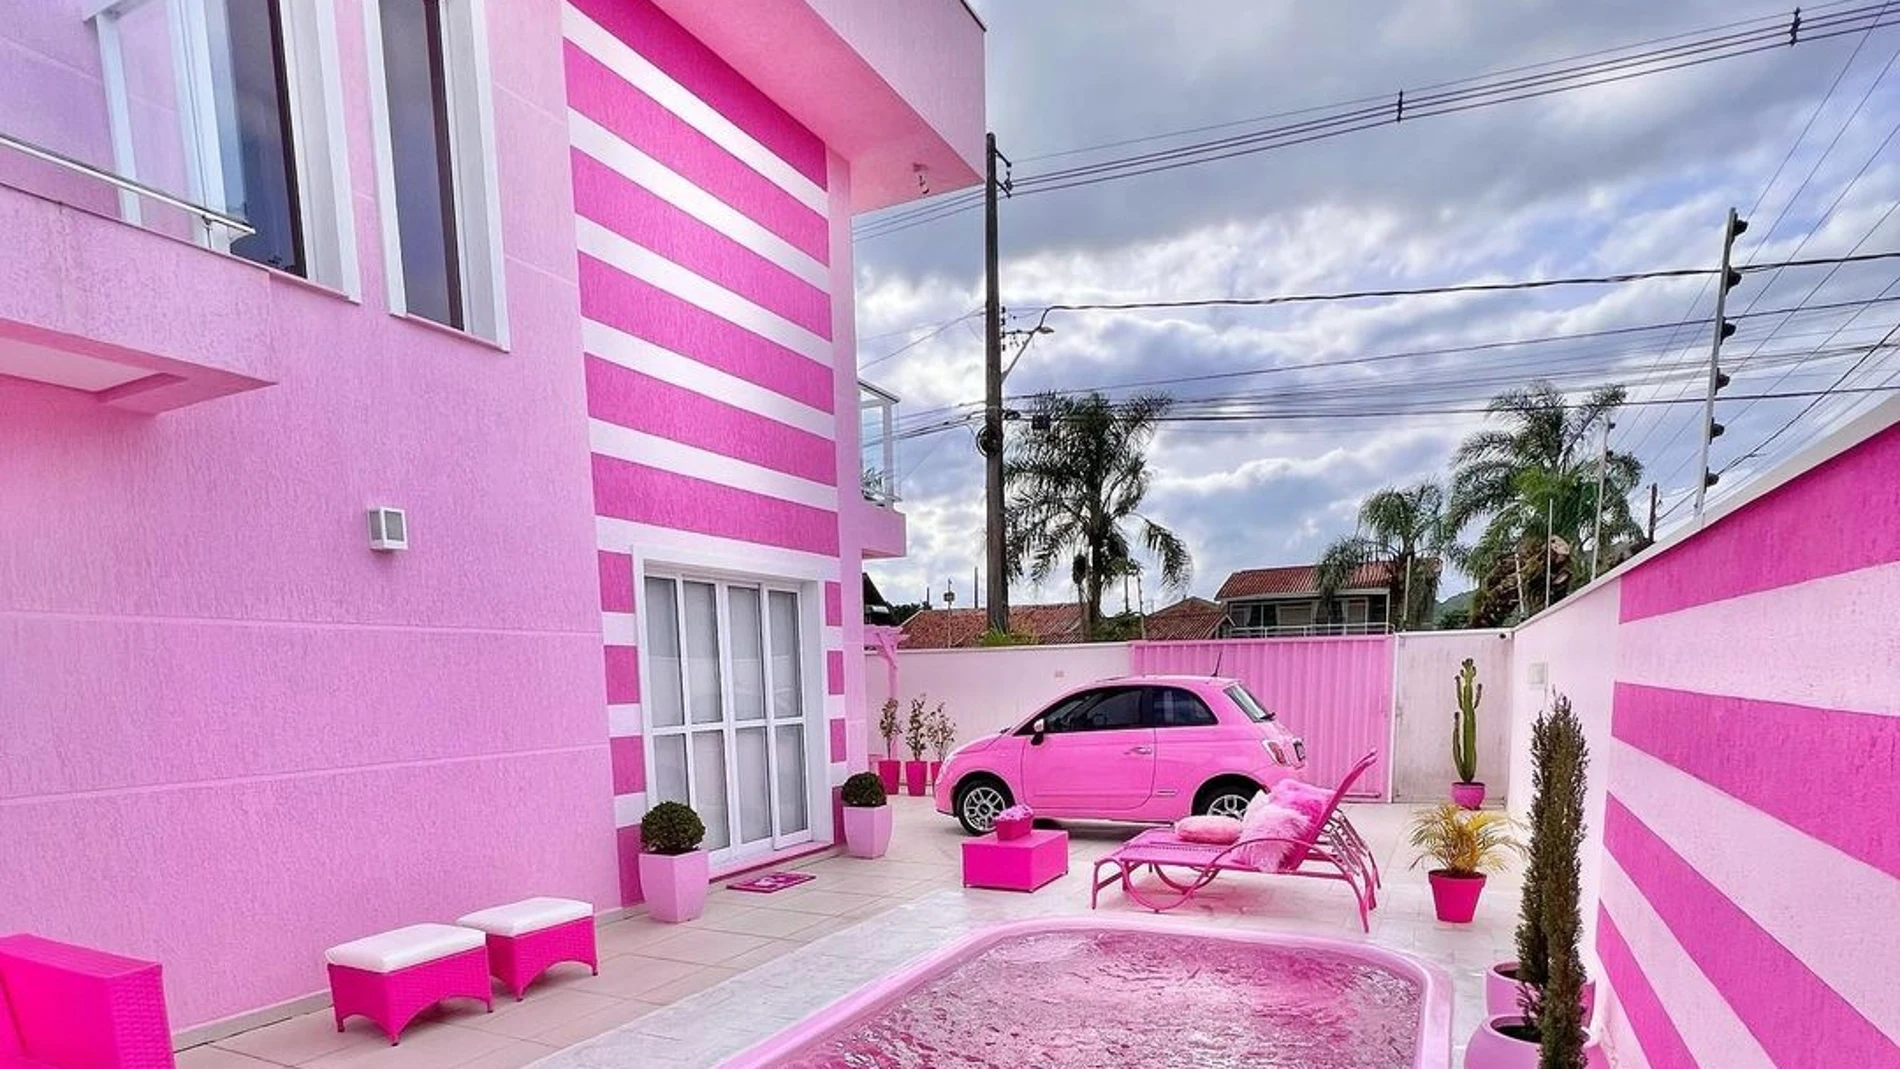 Casa de Barbie, imagen desde la piscina.